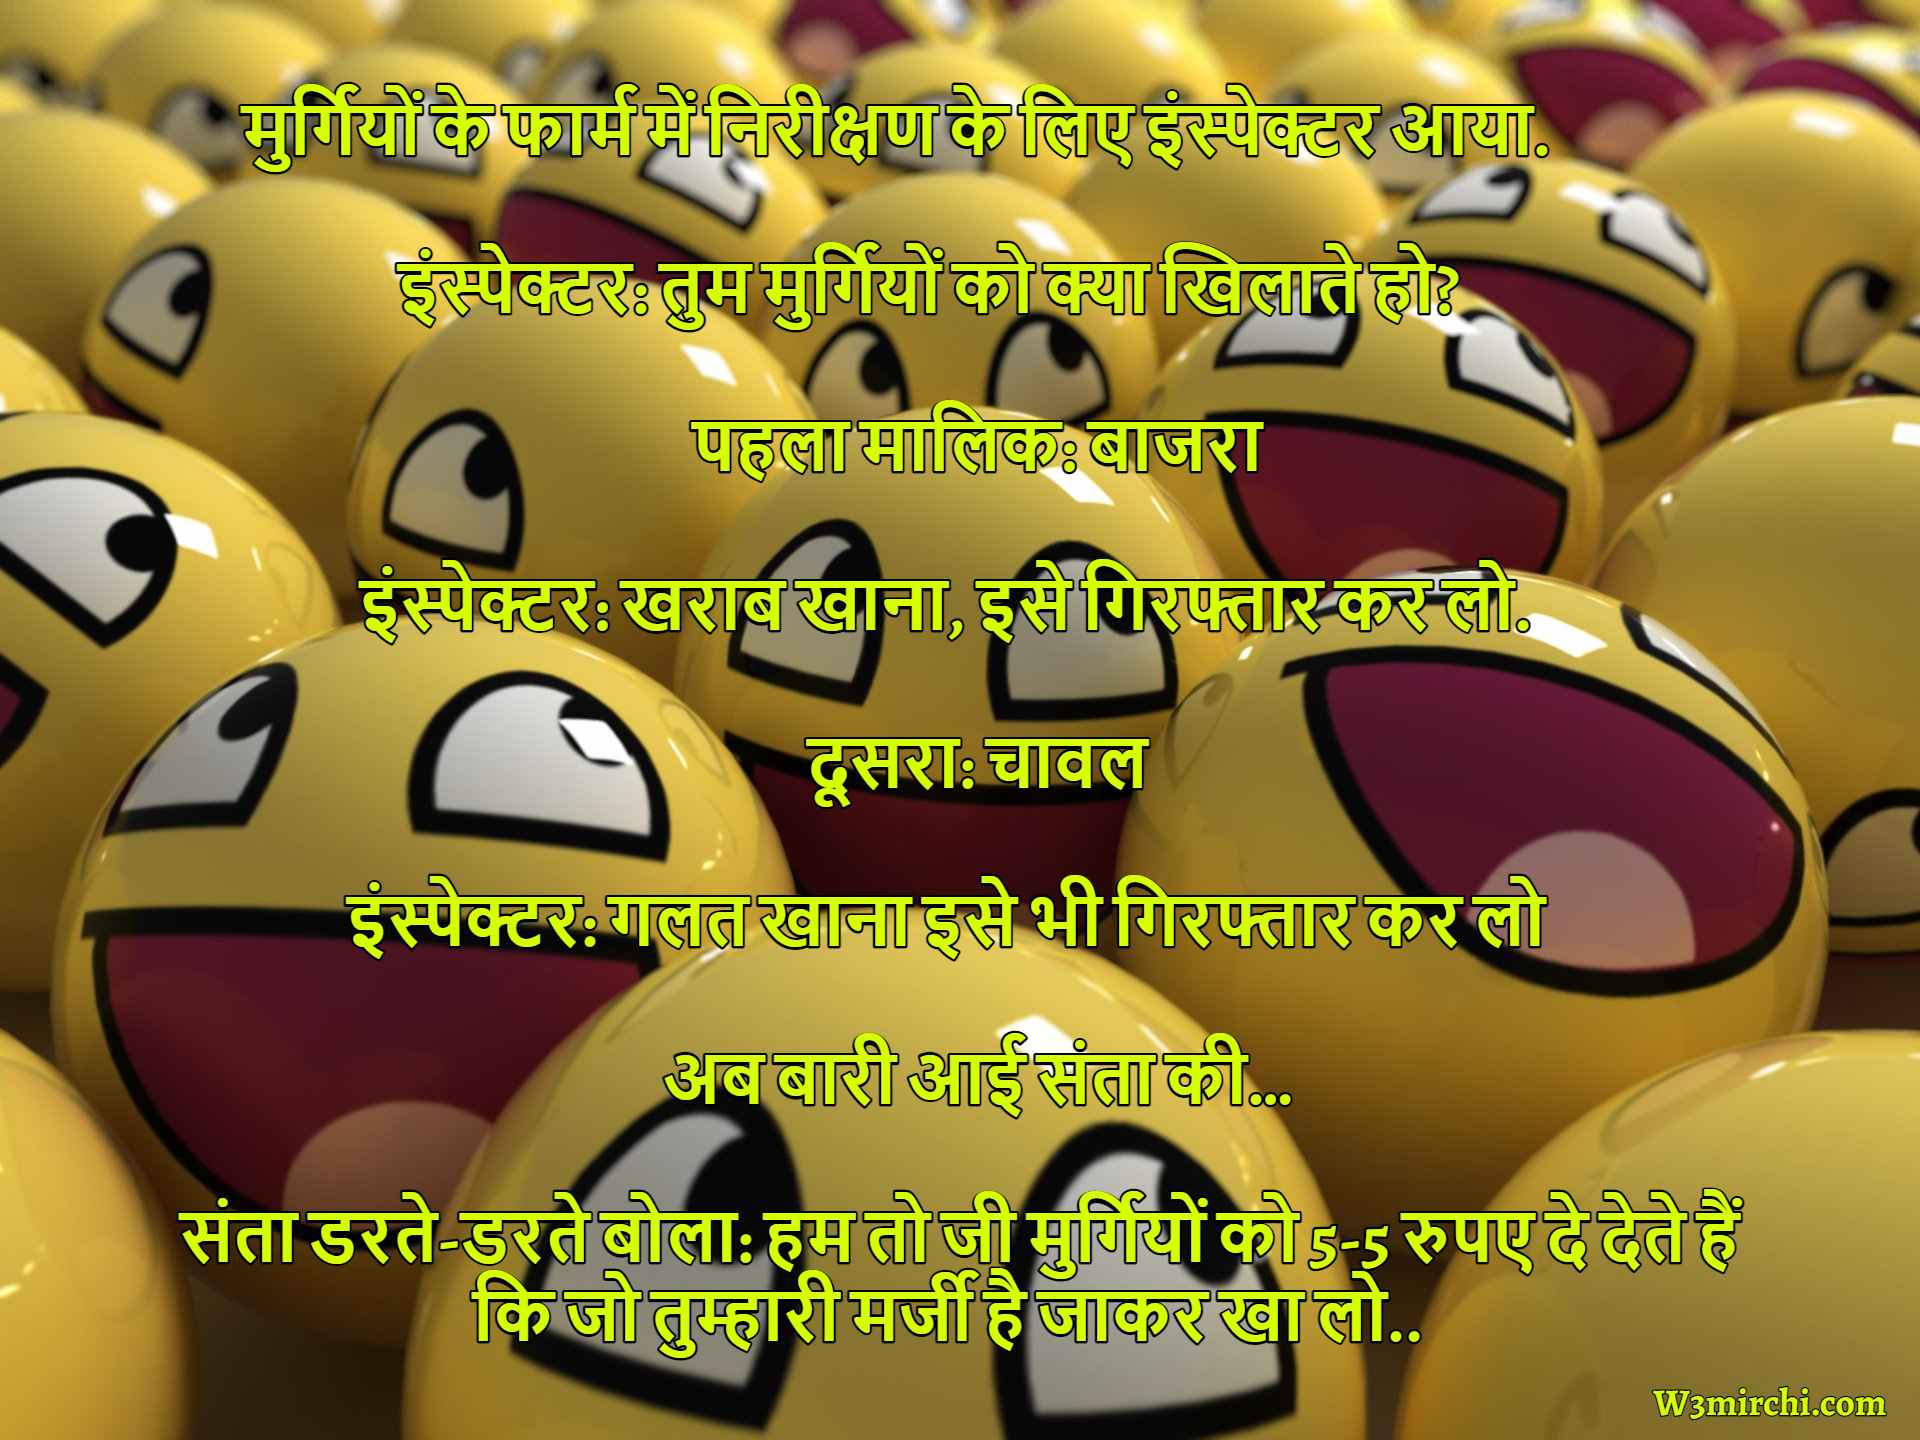 Facebook jokes in Hindi